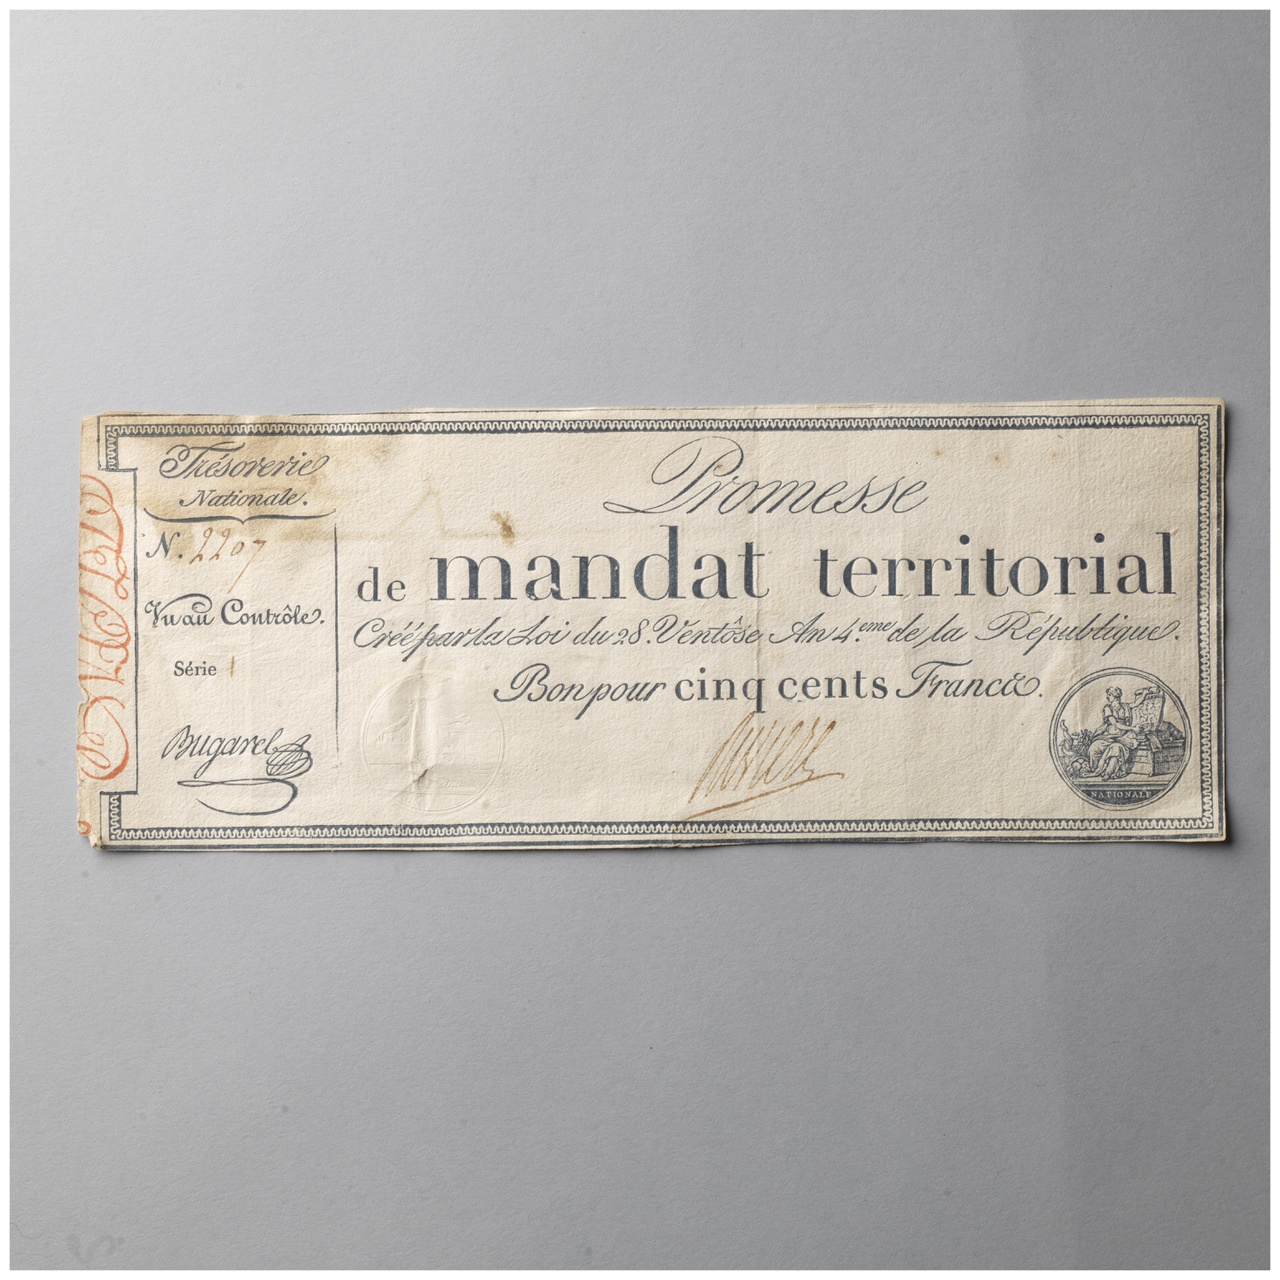 Promesse de mandat territorial van 500 francs